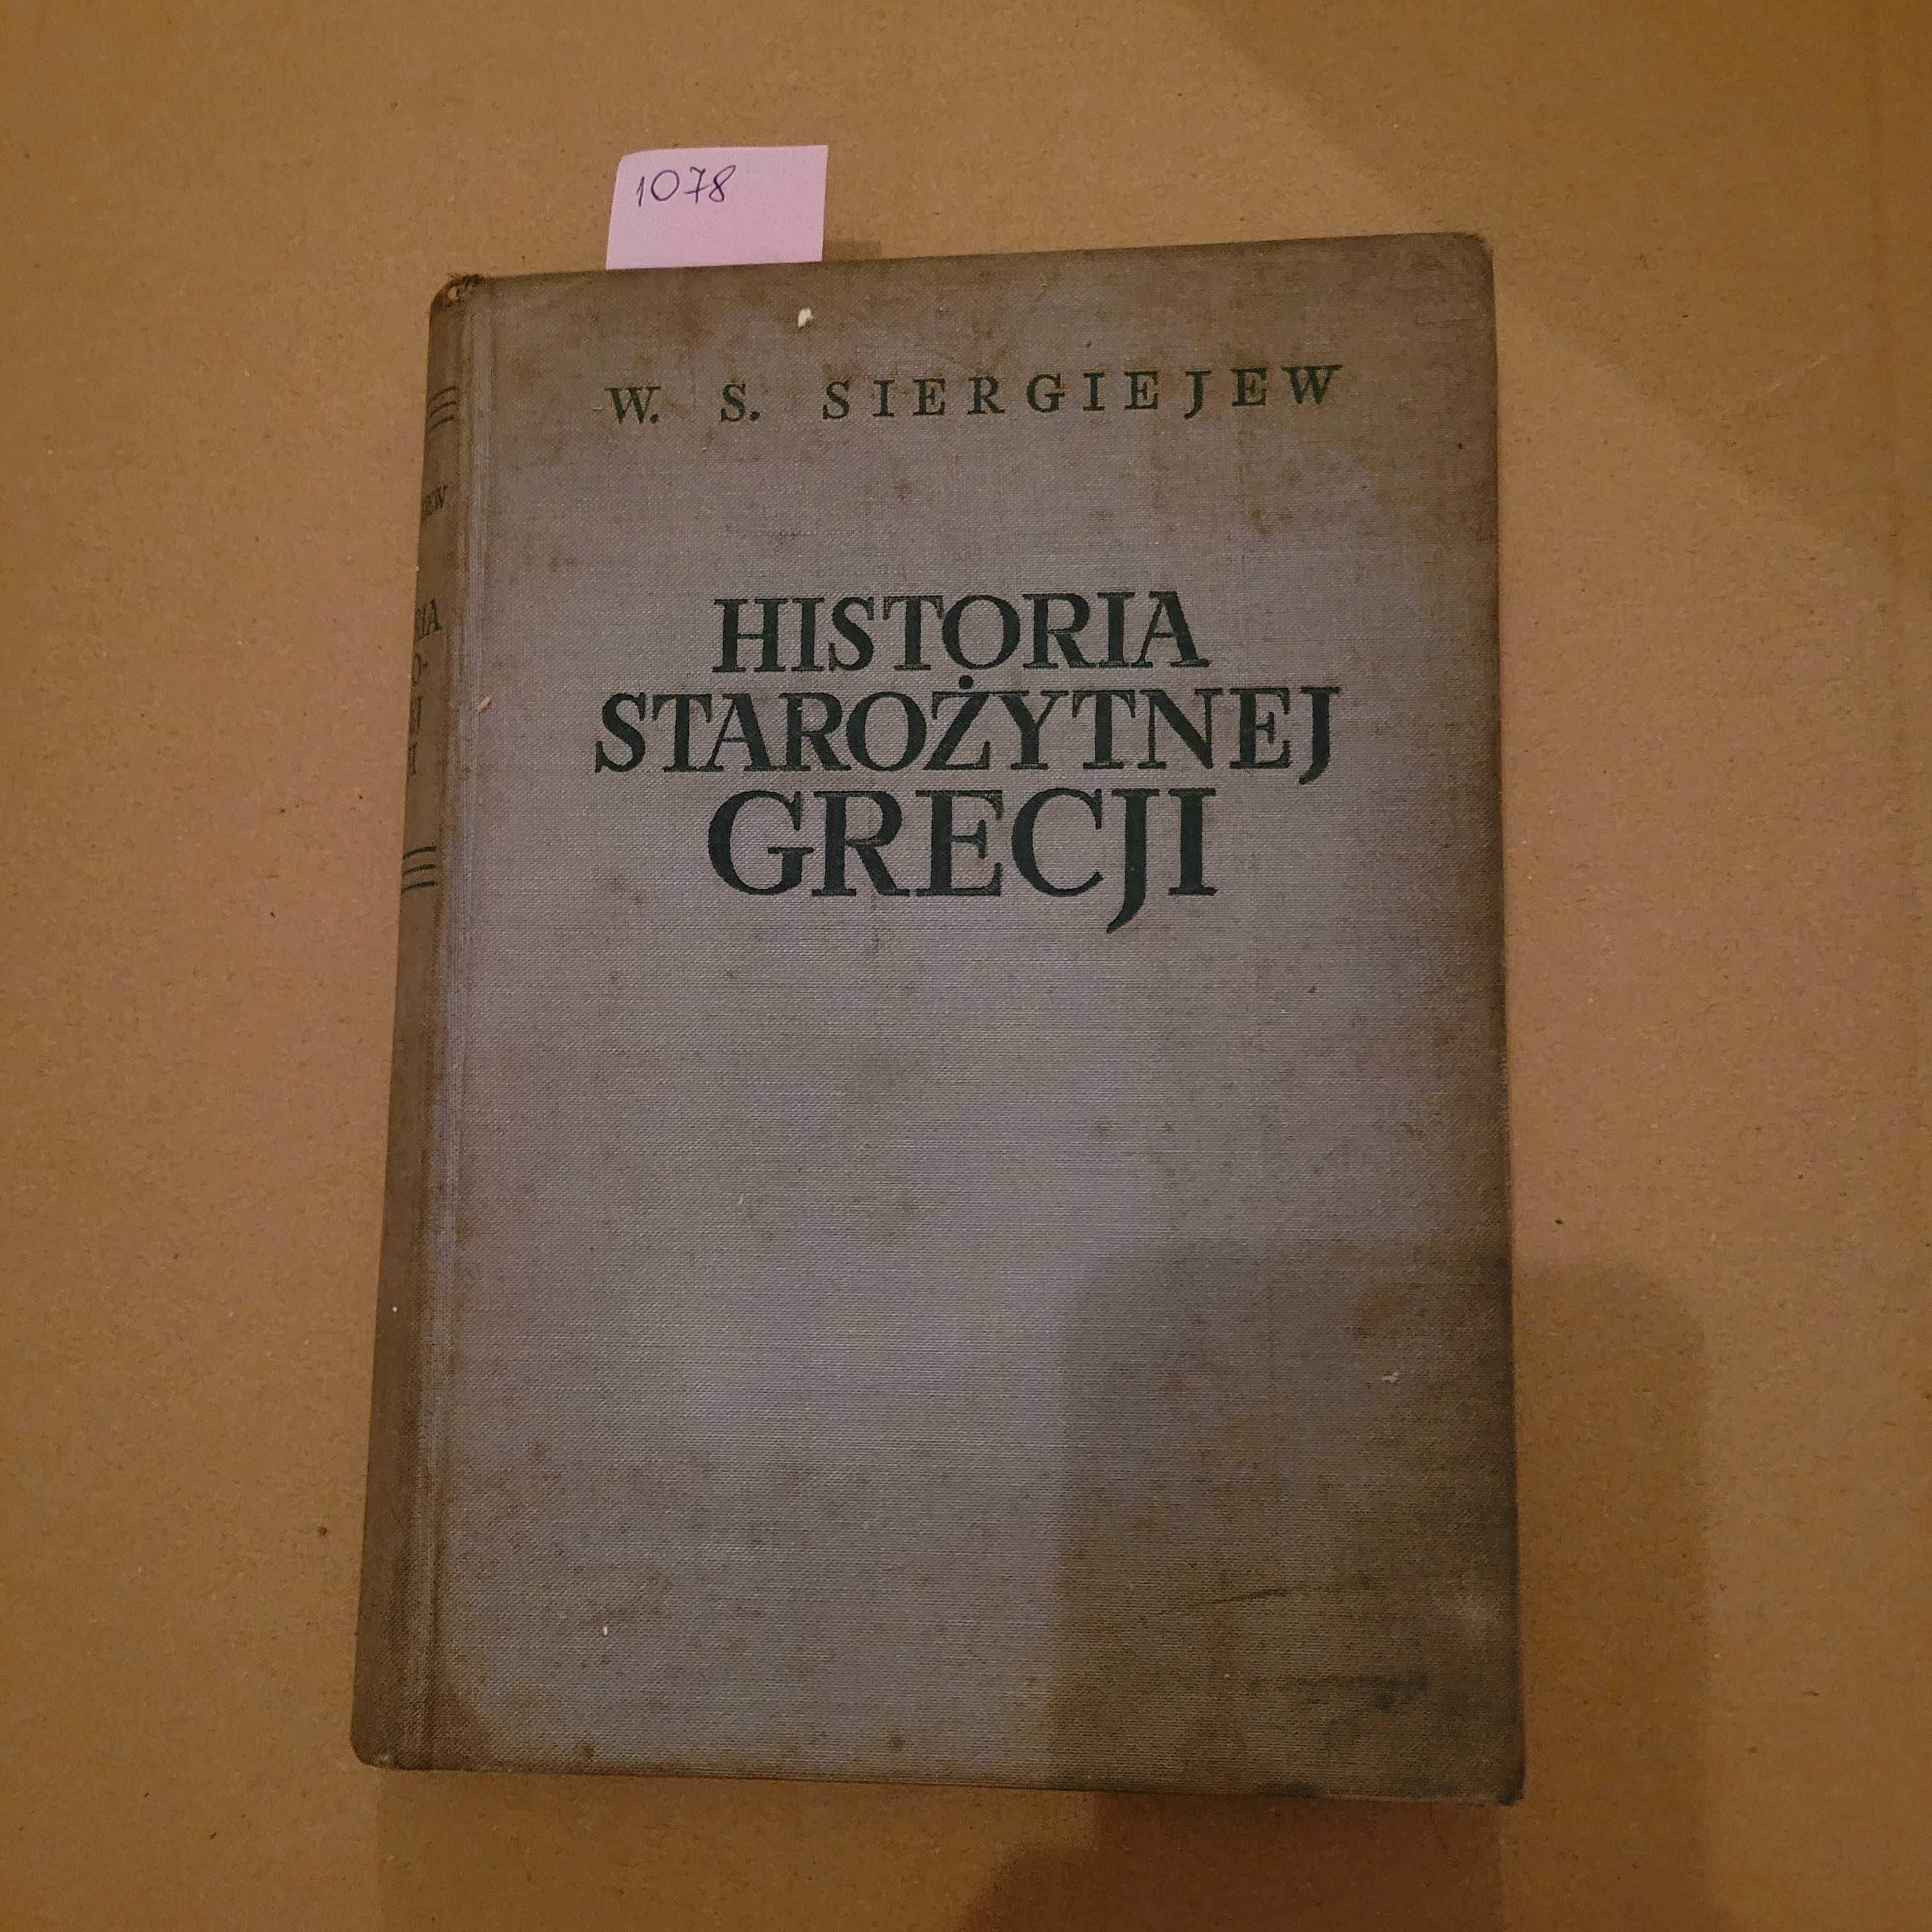 1078. Historia starożytnej Grecji W.S. Siergiejew 1952